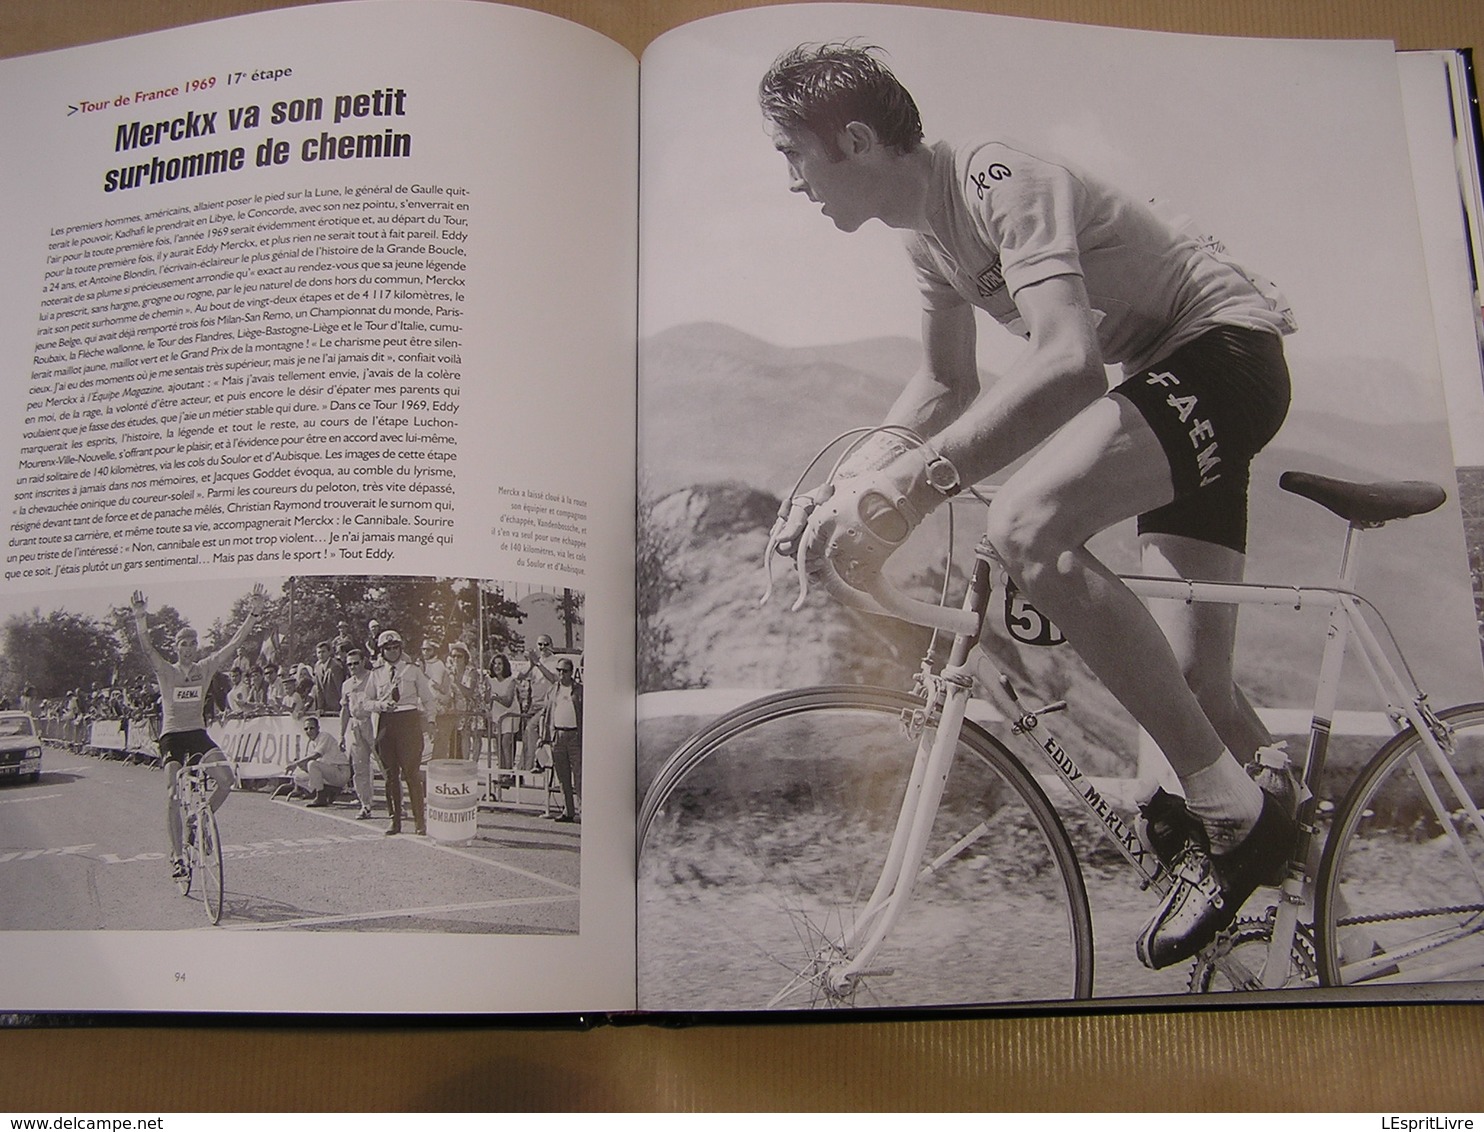 CYCLISME Les Moments Inoubliables Course Cycliste Coureur Vélo Coppi Merckx Bobet Robic Kubler Bartali Anquetil Champion